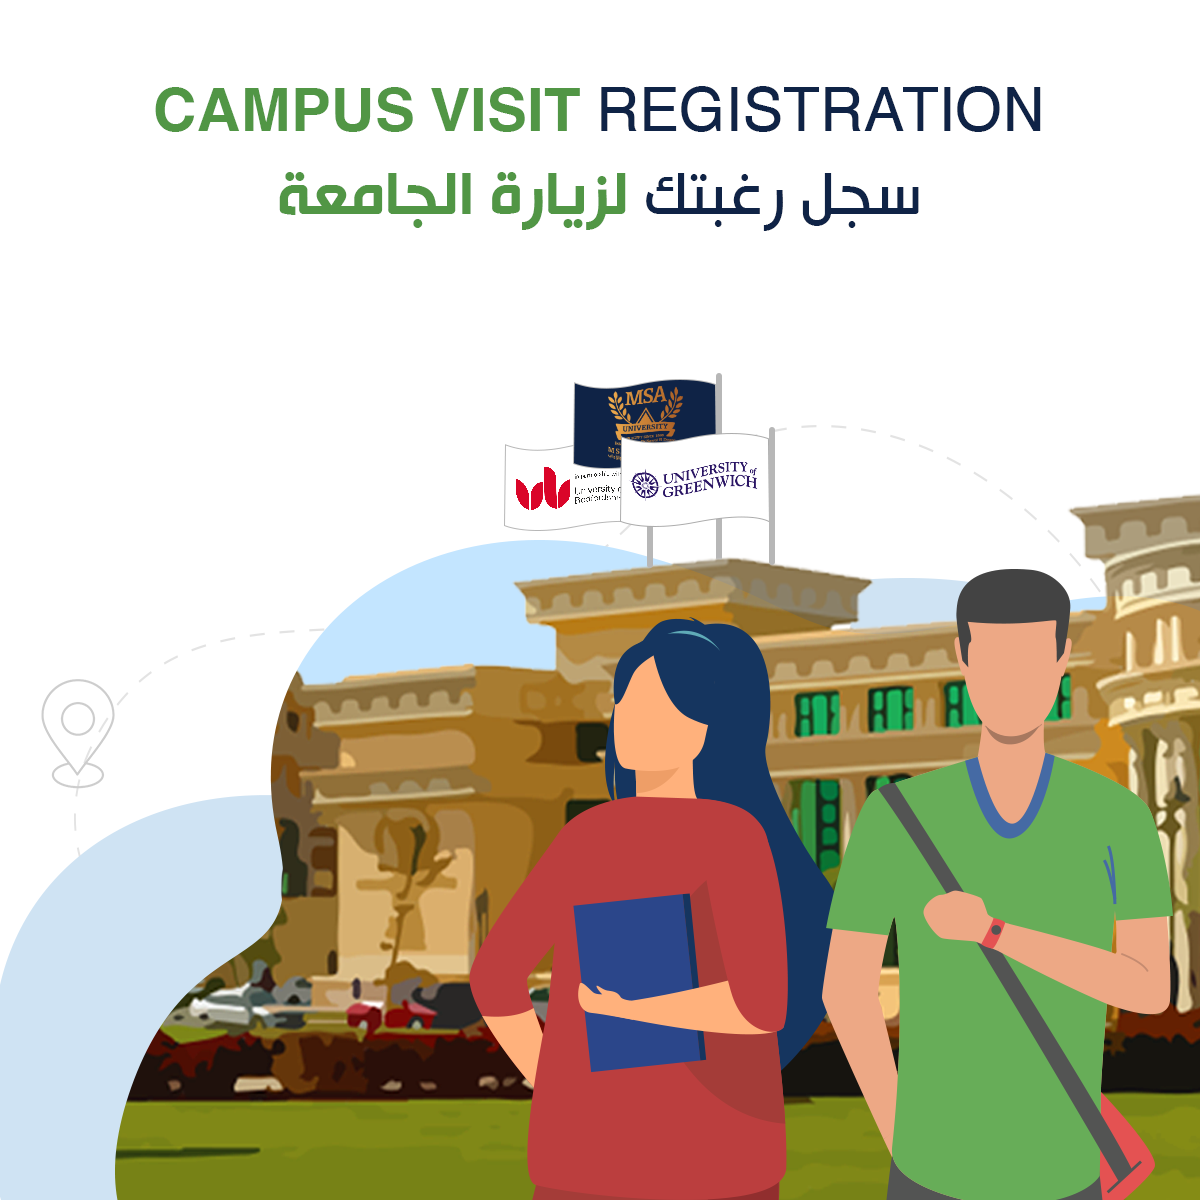 Campus Visit <strong>Registration</strong><br />
	سجل رغبتك لزيارة الجامعة